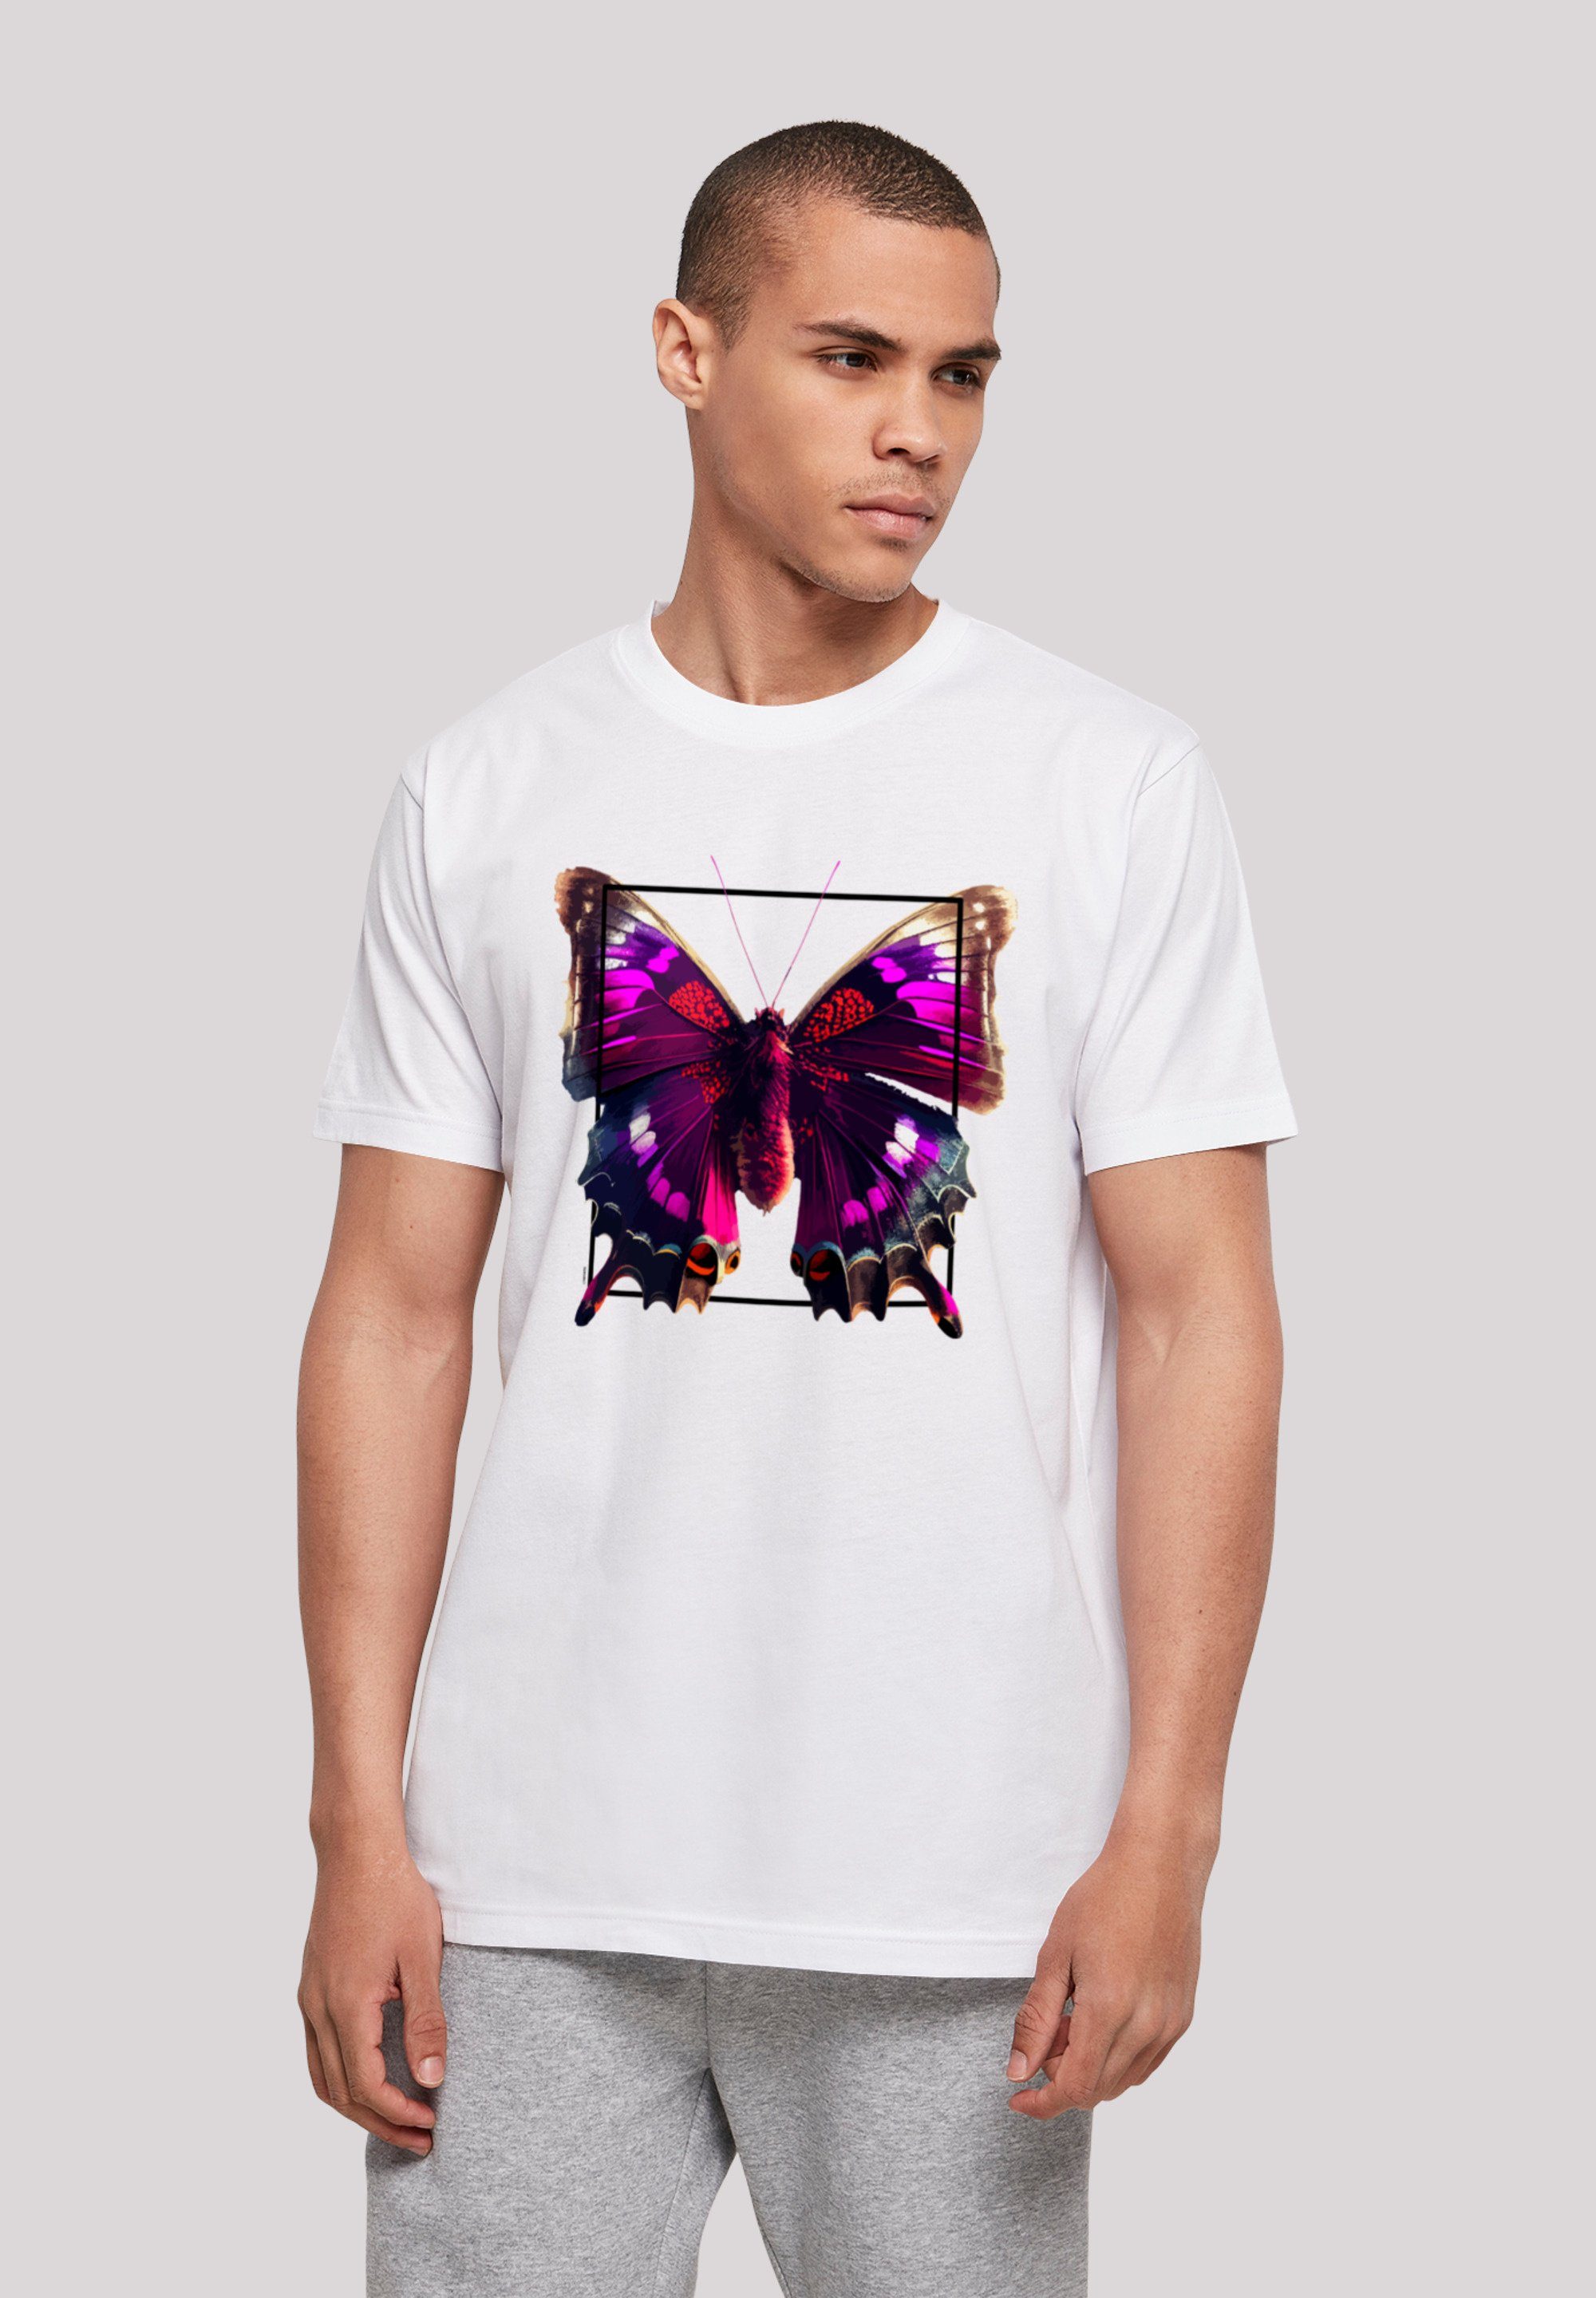 Luxus-Versandhandel F4NT4STIC T-Shirt weiß Schmetterling UNISEX Pink TEE Print